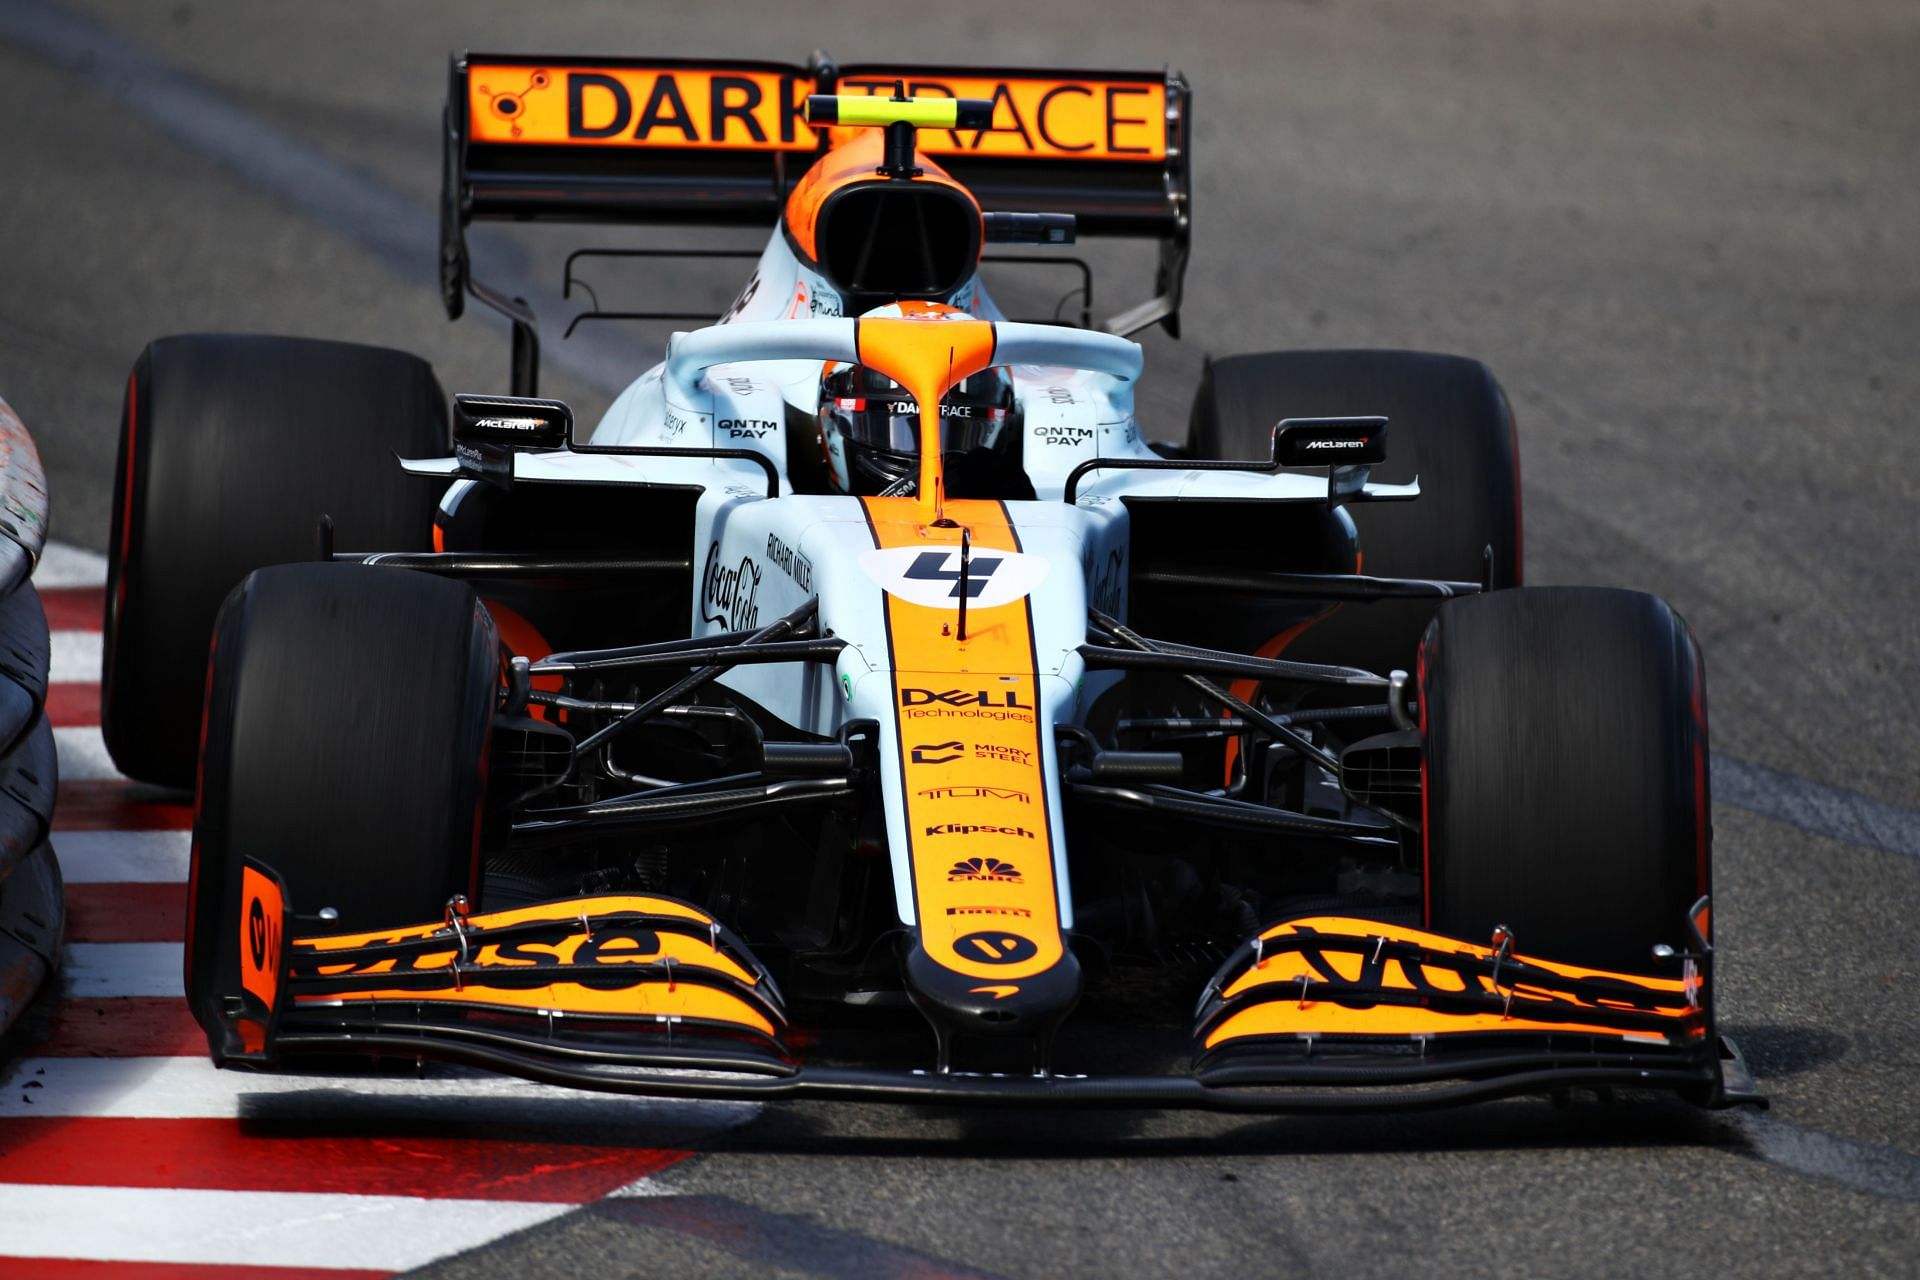 F1 Grand Prix of Monaco - Lando Norris takes a right-hander in Monaco